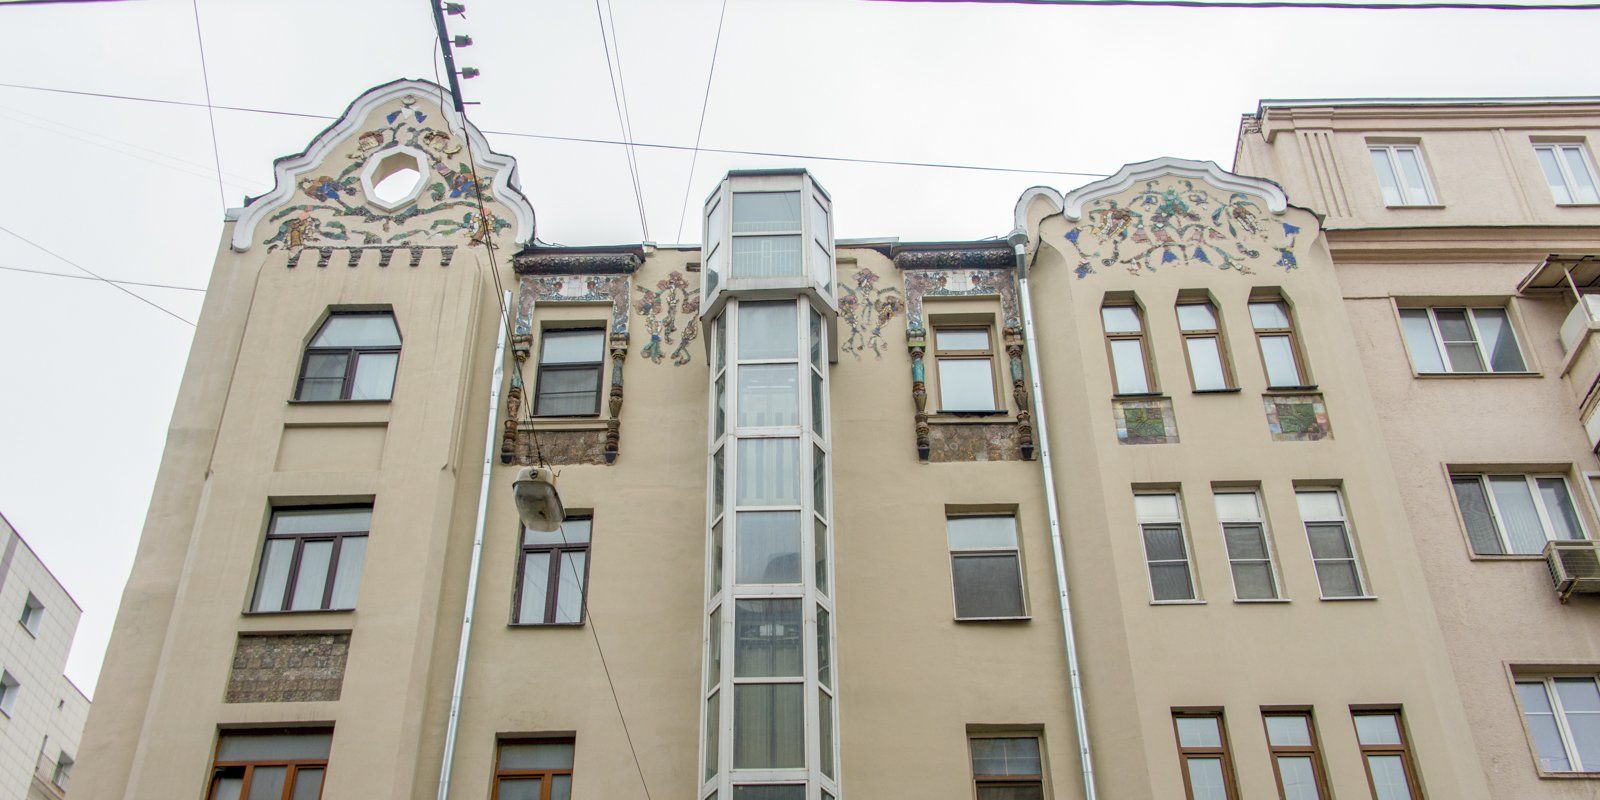 Дому с жар-птицами в Москве присвоили статус памятника архитектуры